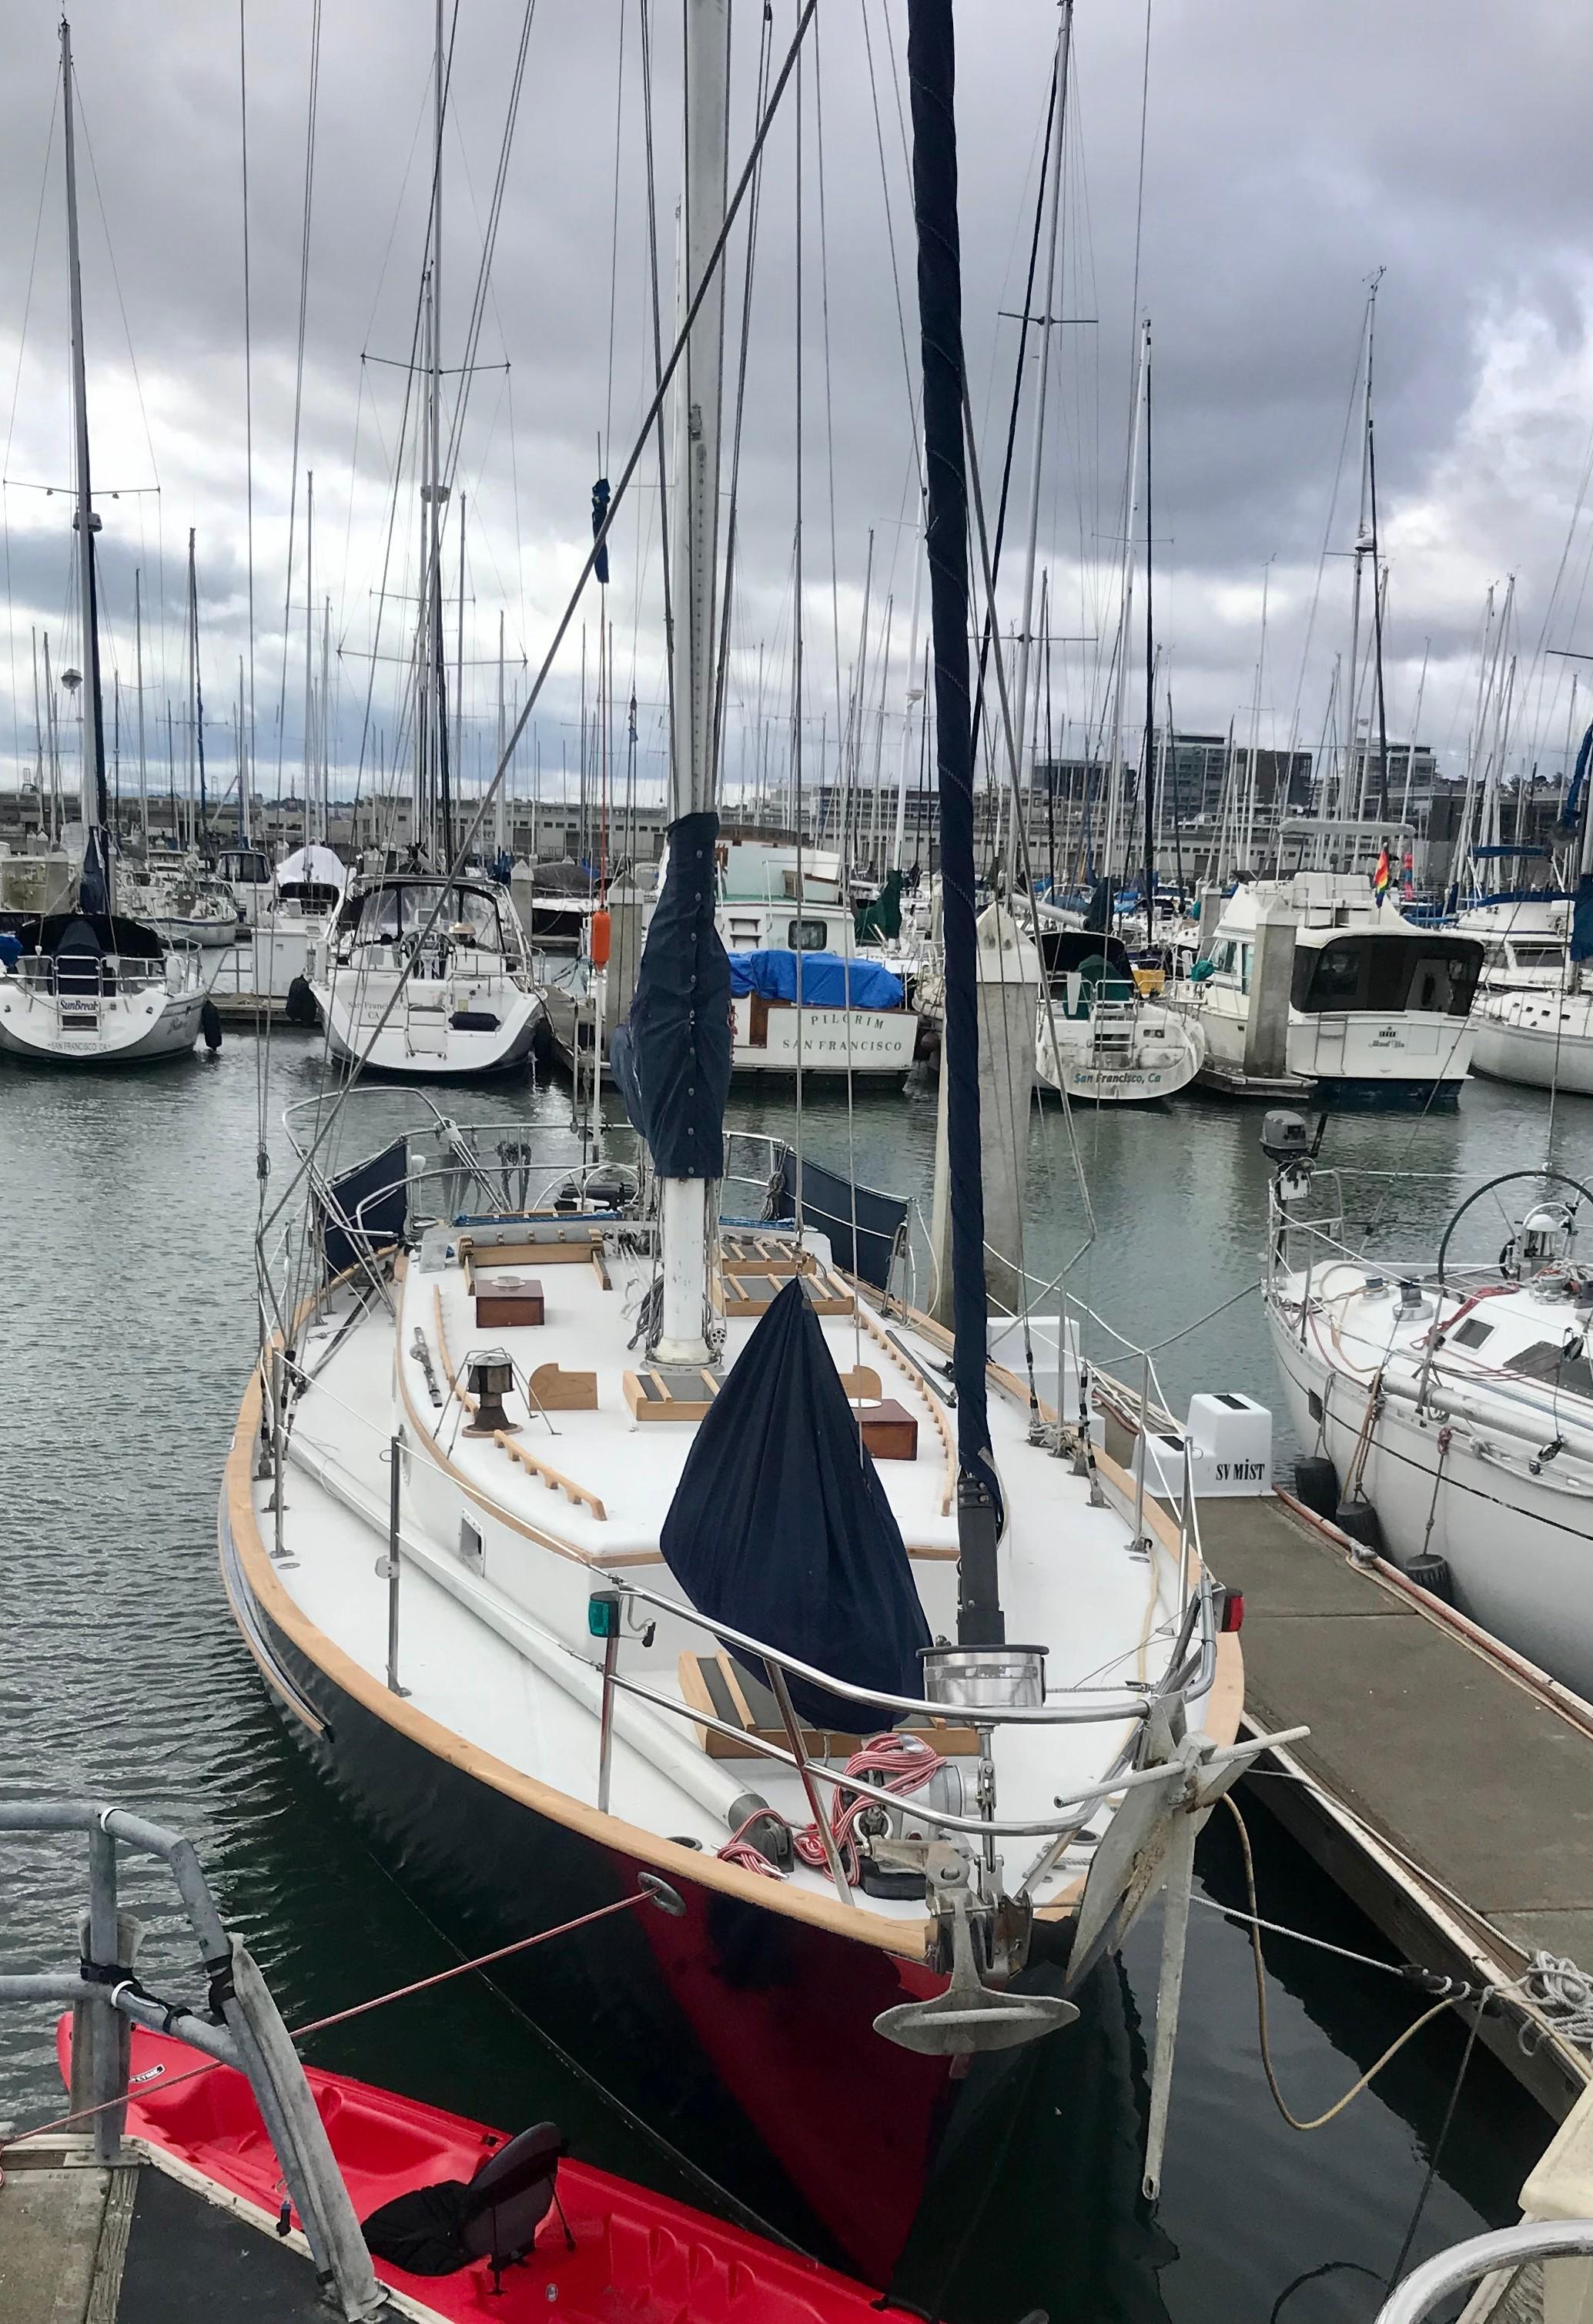 valiant 40 yacht for sale